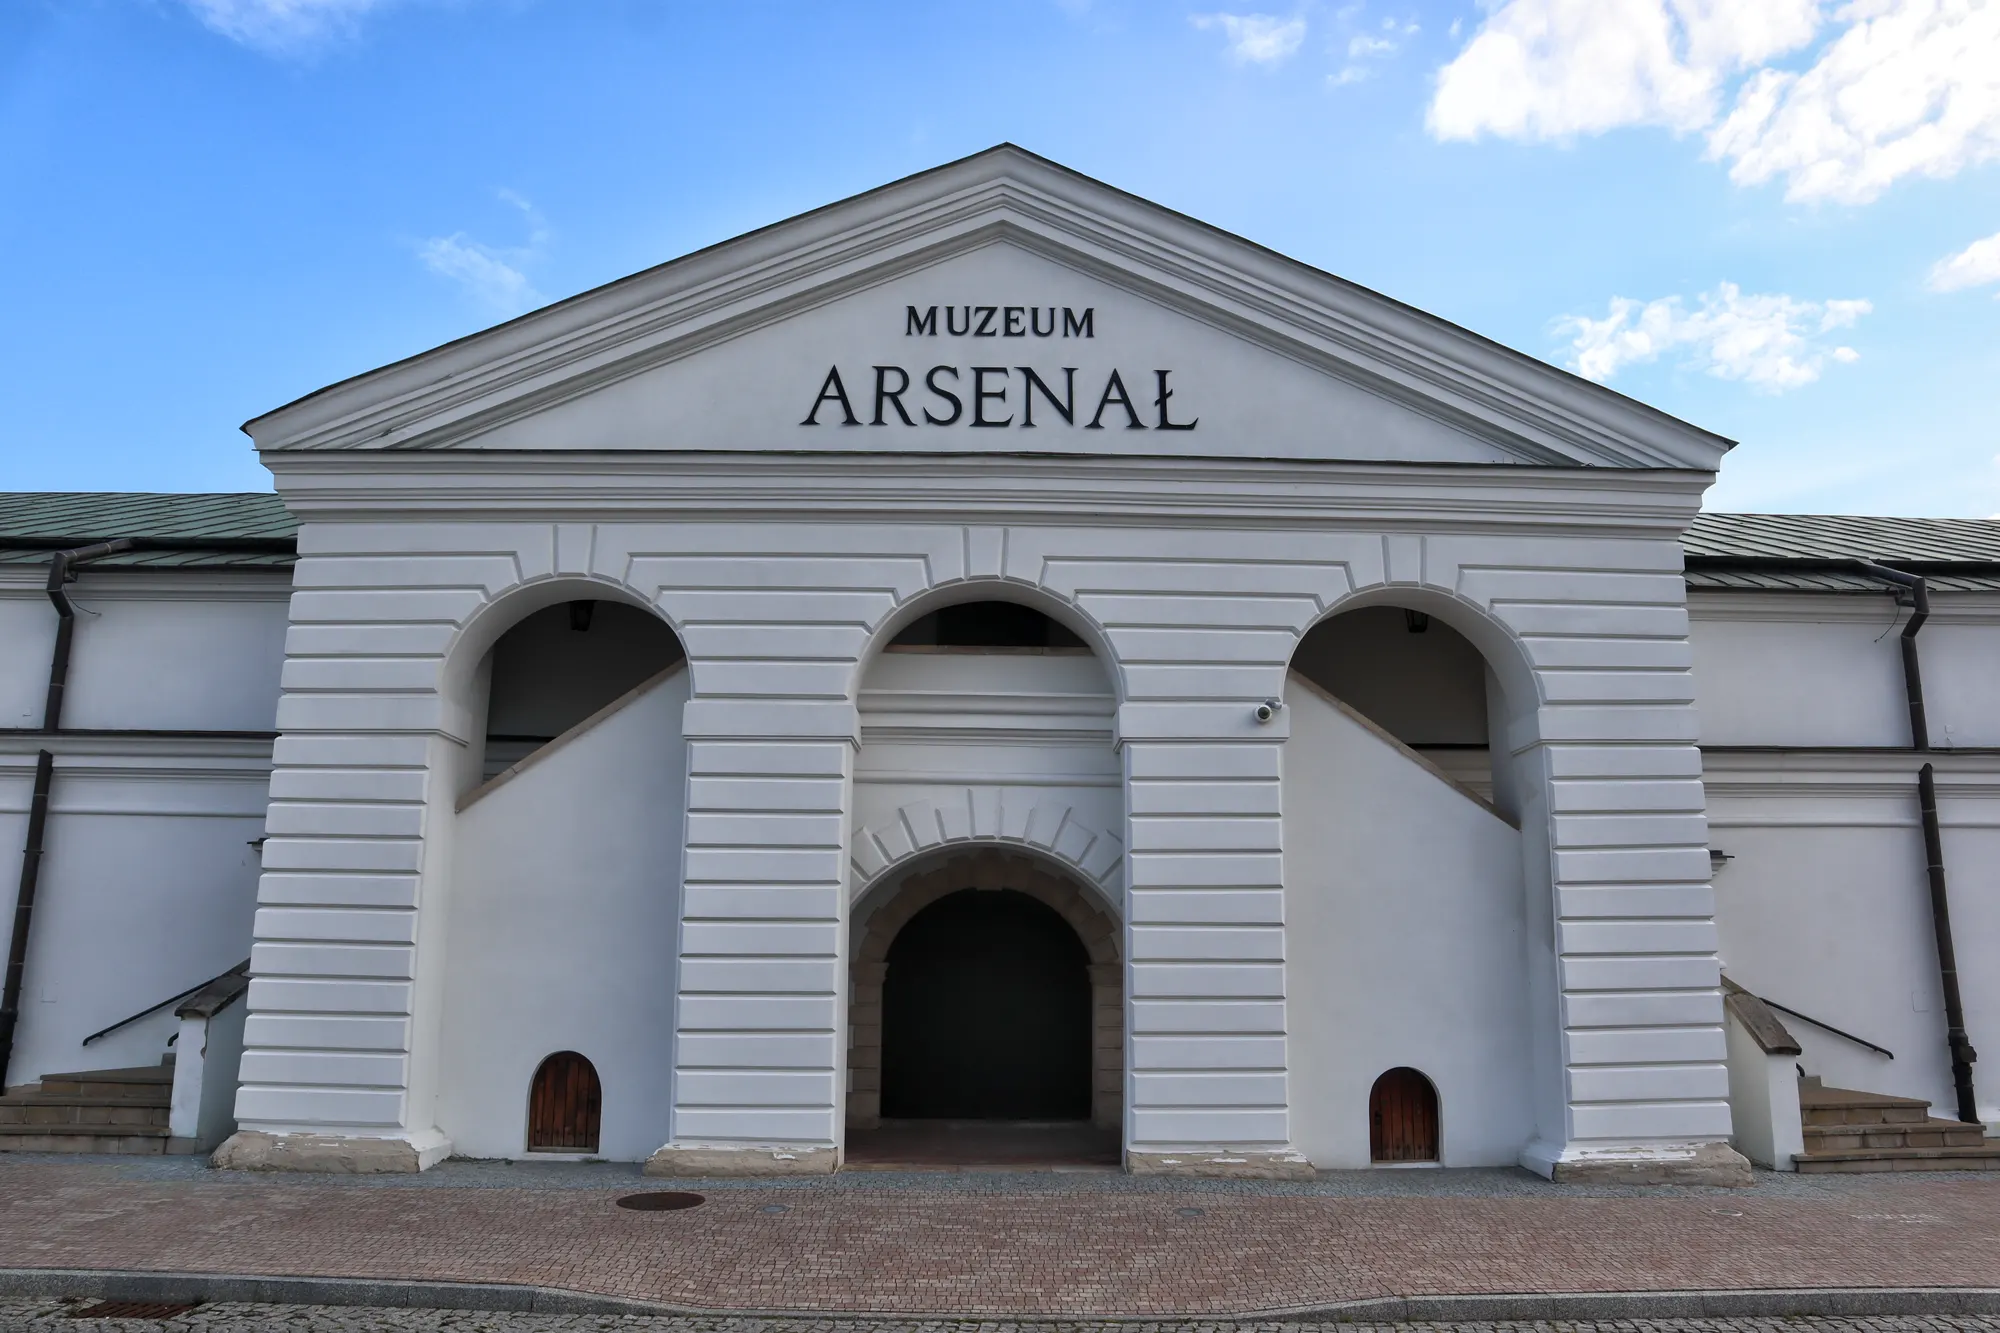 Zamość, Polen - Muzeum Arsenal